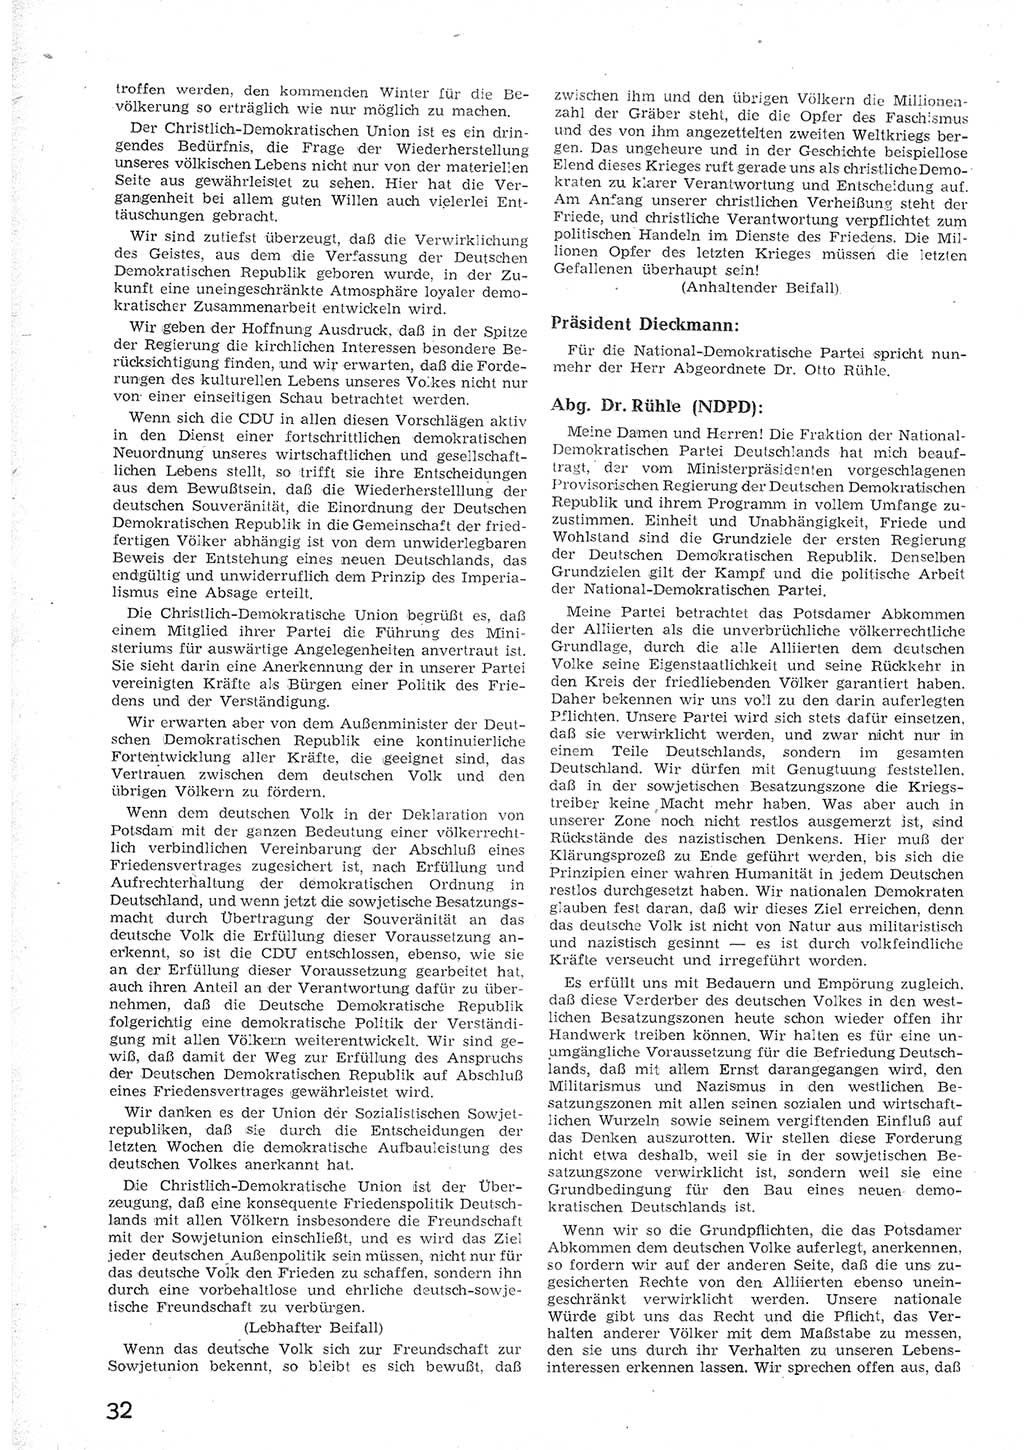 Provisorische Volkskammer (VK) der Deutschen Demokratischen Republik (DDR) 1949-1950, Dokument 44 (Prov. VK DDR 1949-1950, Dok. 44)